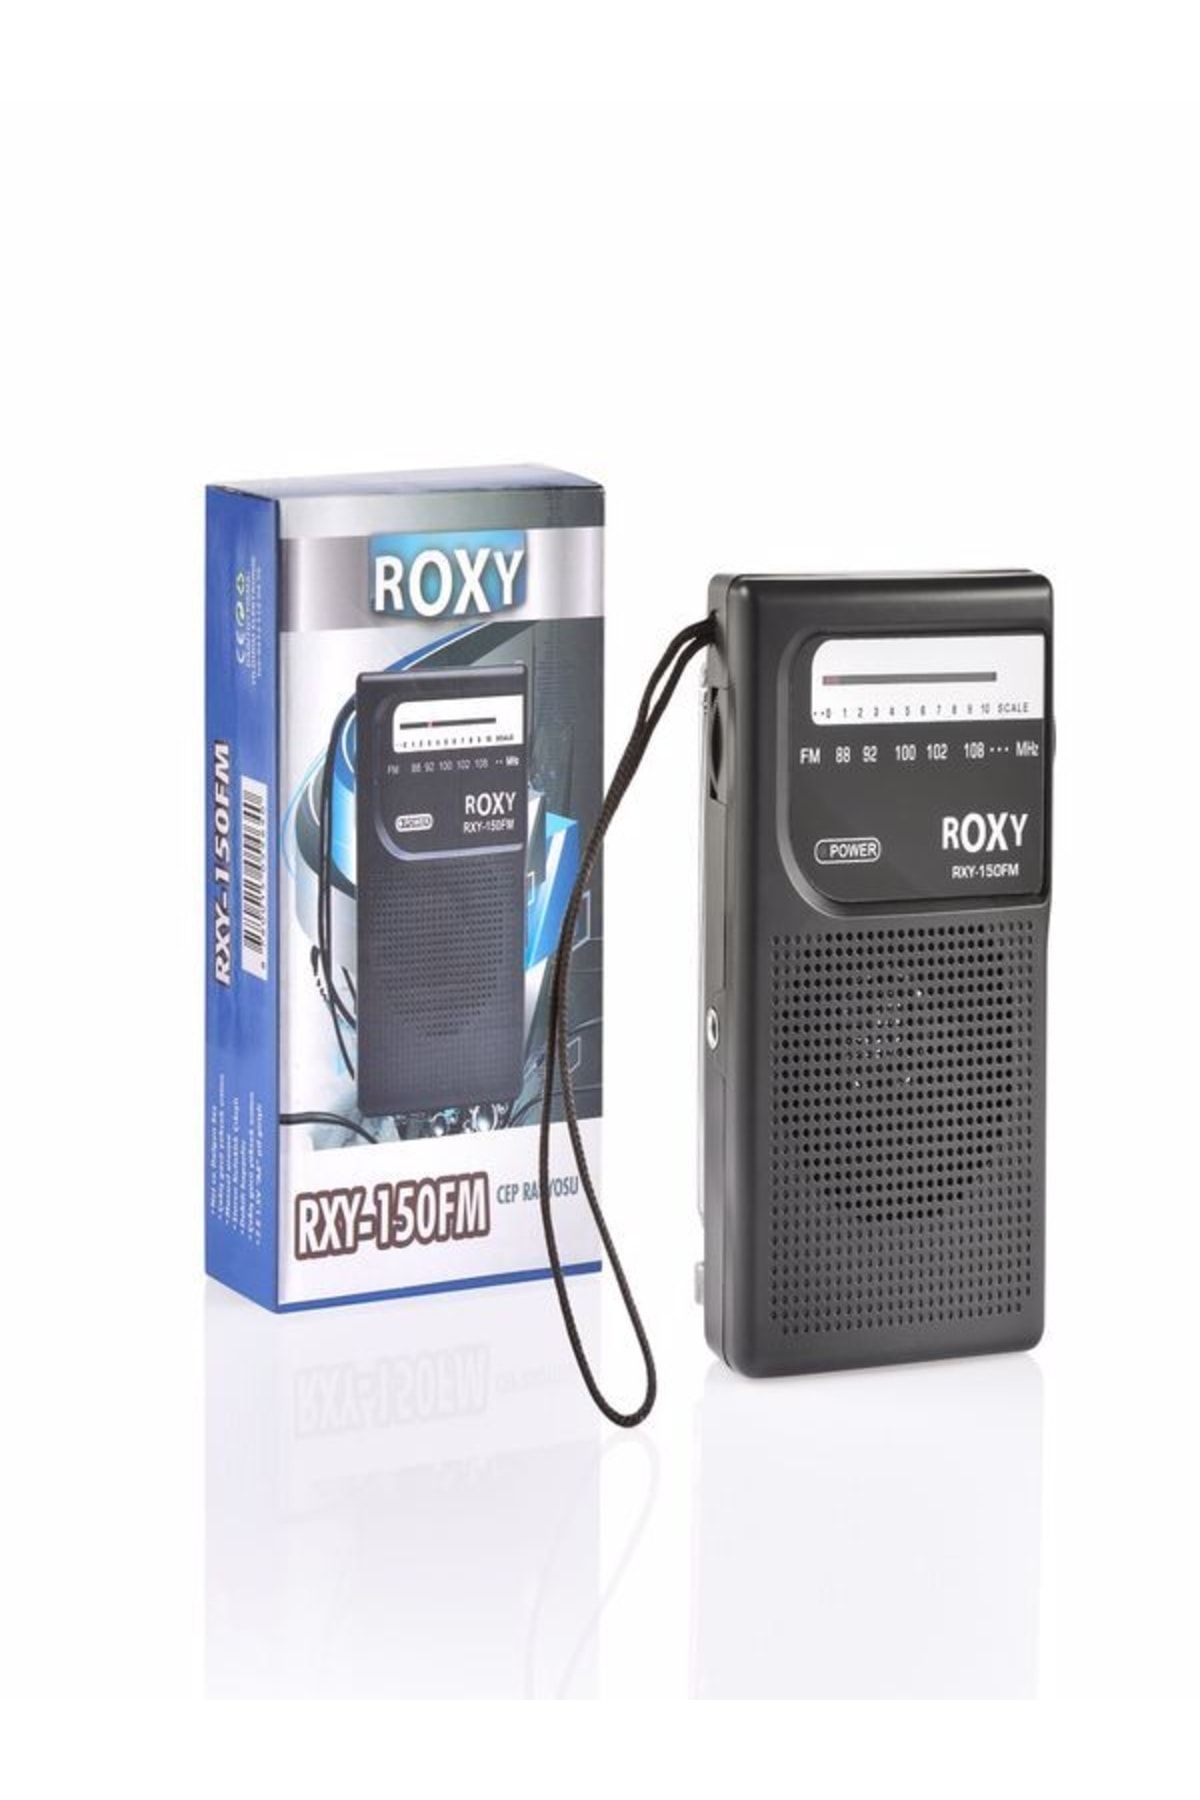 Roxy Rxy-150fm Cep Radyosu - Deprem Çantasına Uygun Taşınabilir Radyo